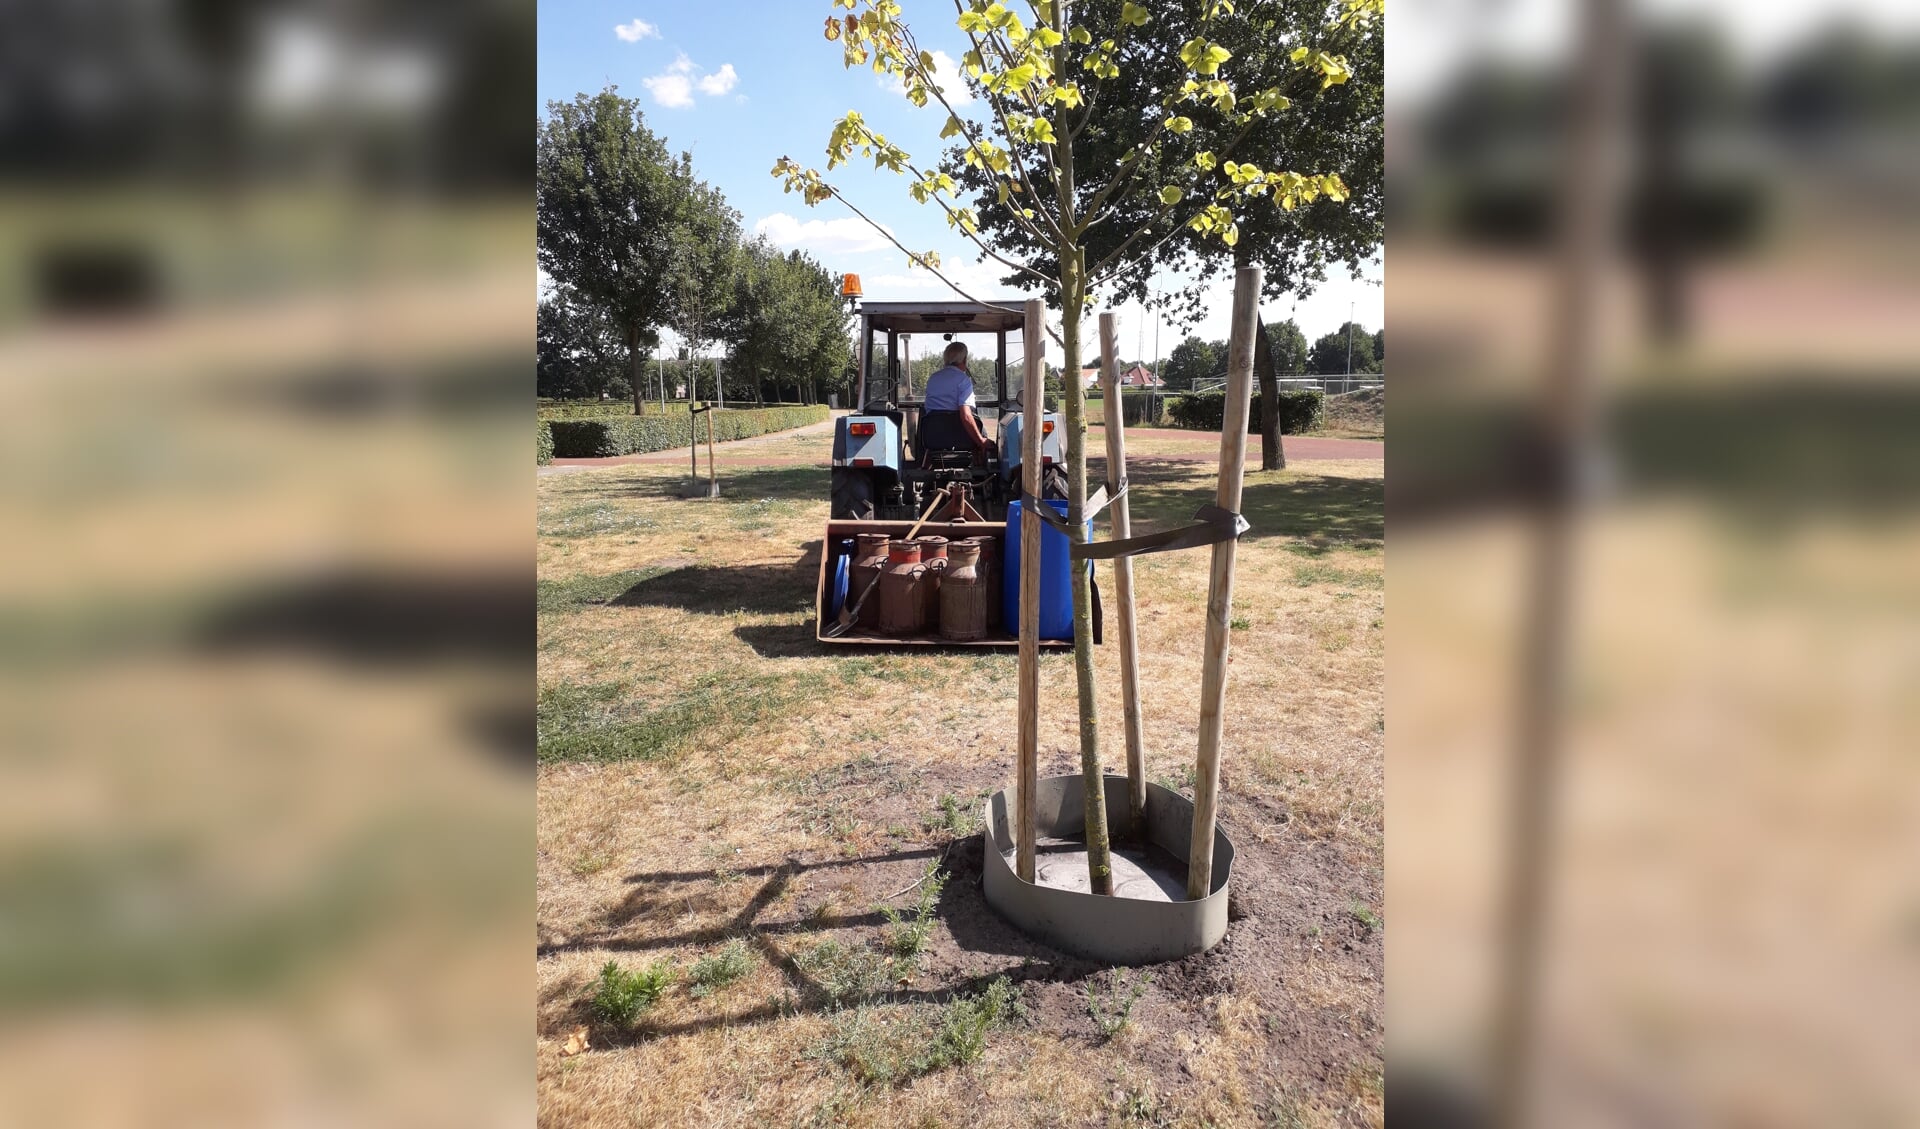 Twee keer in de week wordt driehonderd liter grondwater in melkbussen aangevoerd om de bomen van water te voorzien. Foto: PR. 